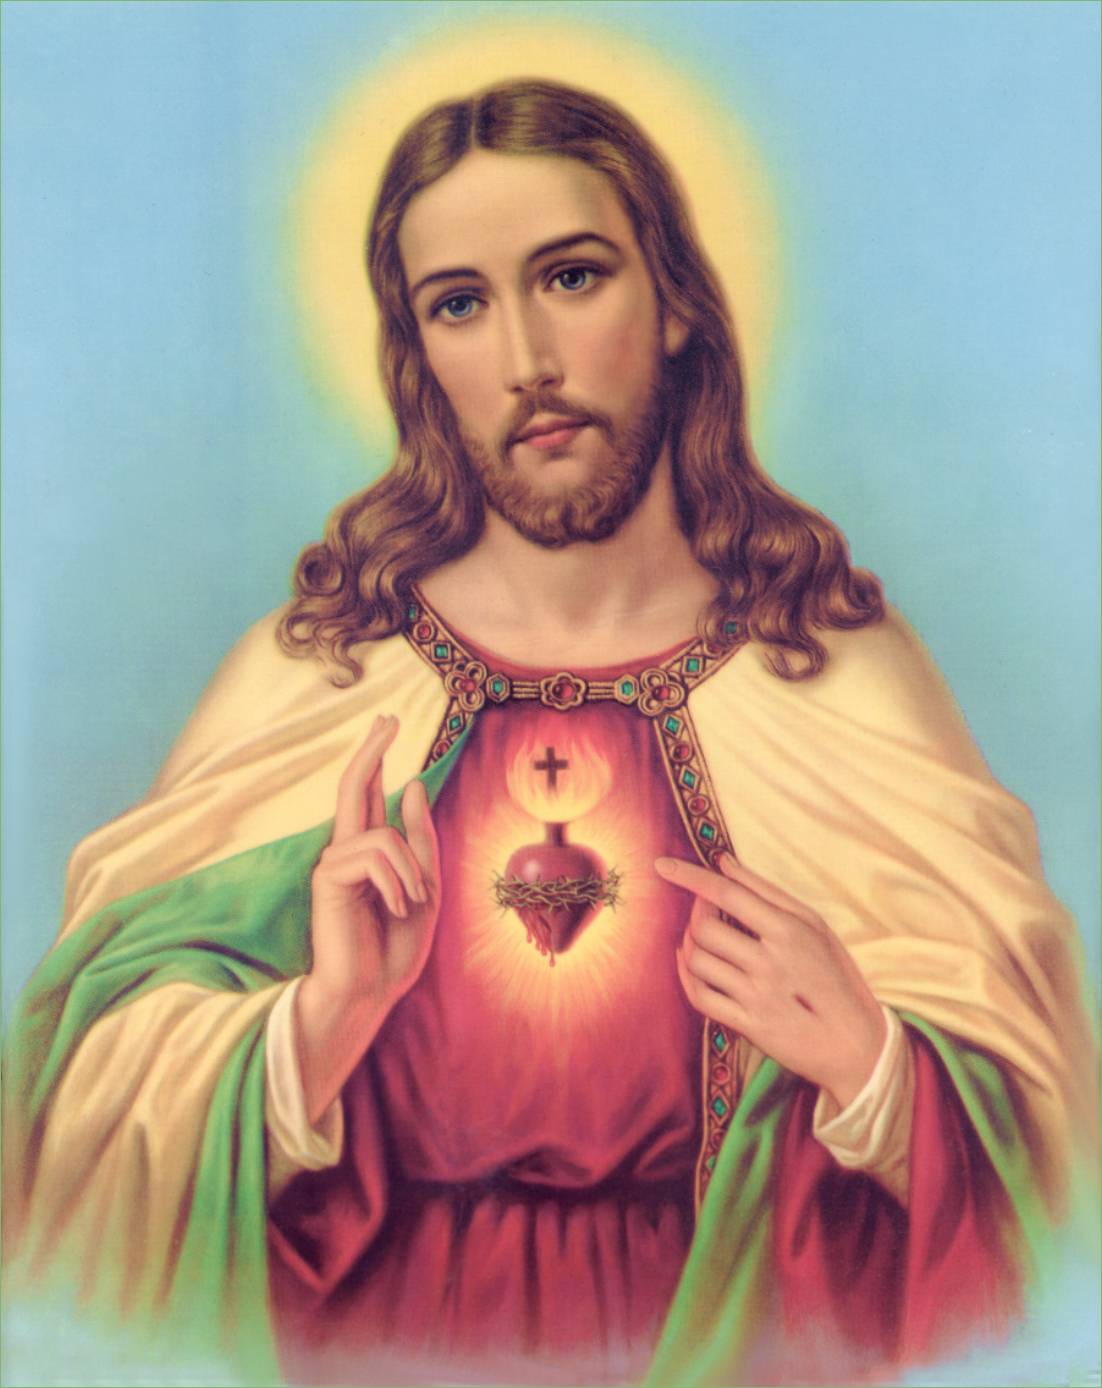 Sacred Heart of Jesus wallpaper by Poisonadder on DeviantArt